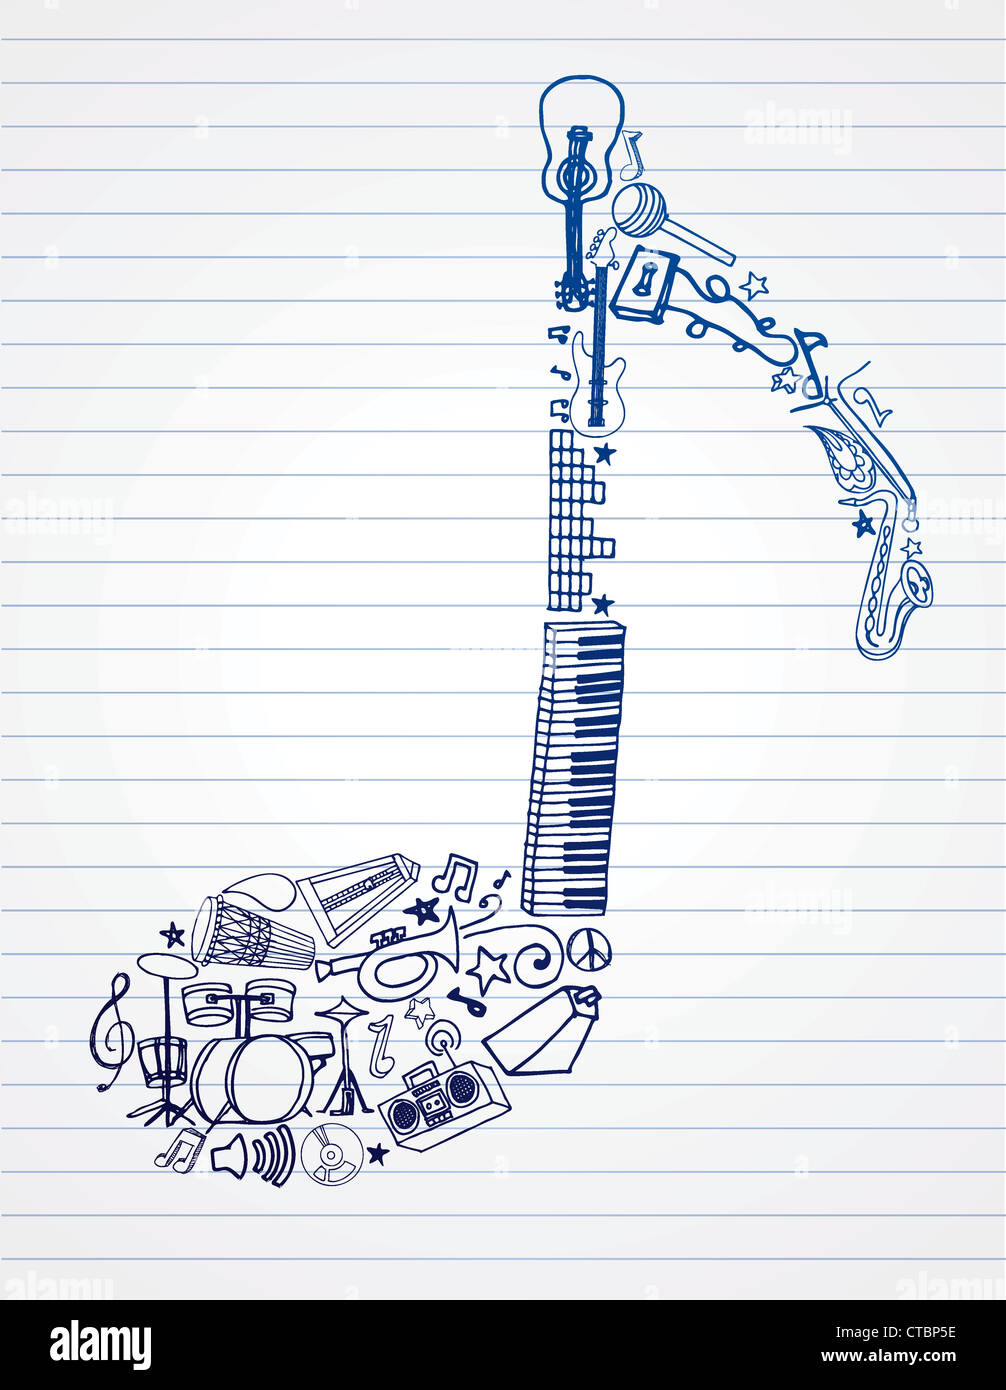 Handgezeichnete Musik Verwandte Doodle in Anmerkung Form angeordnet. Stockfoto